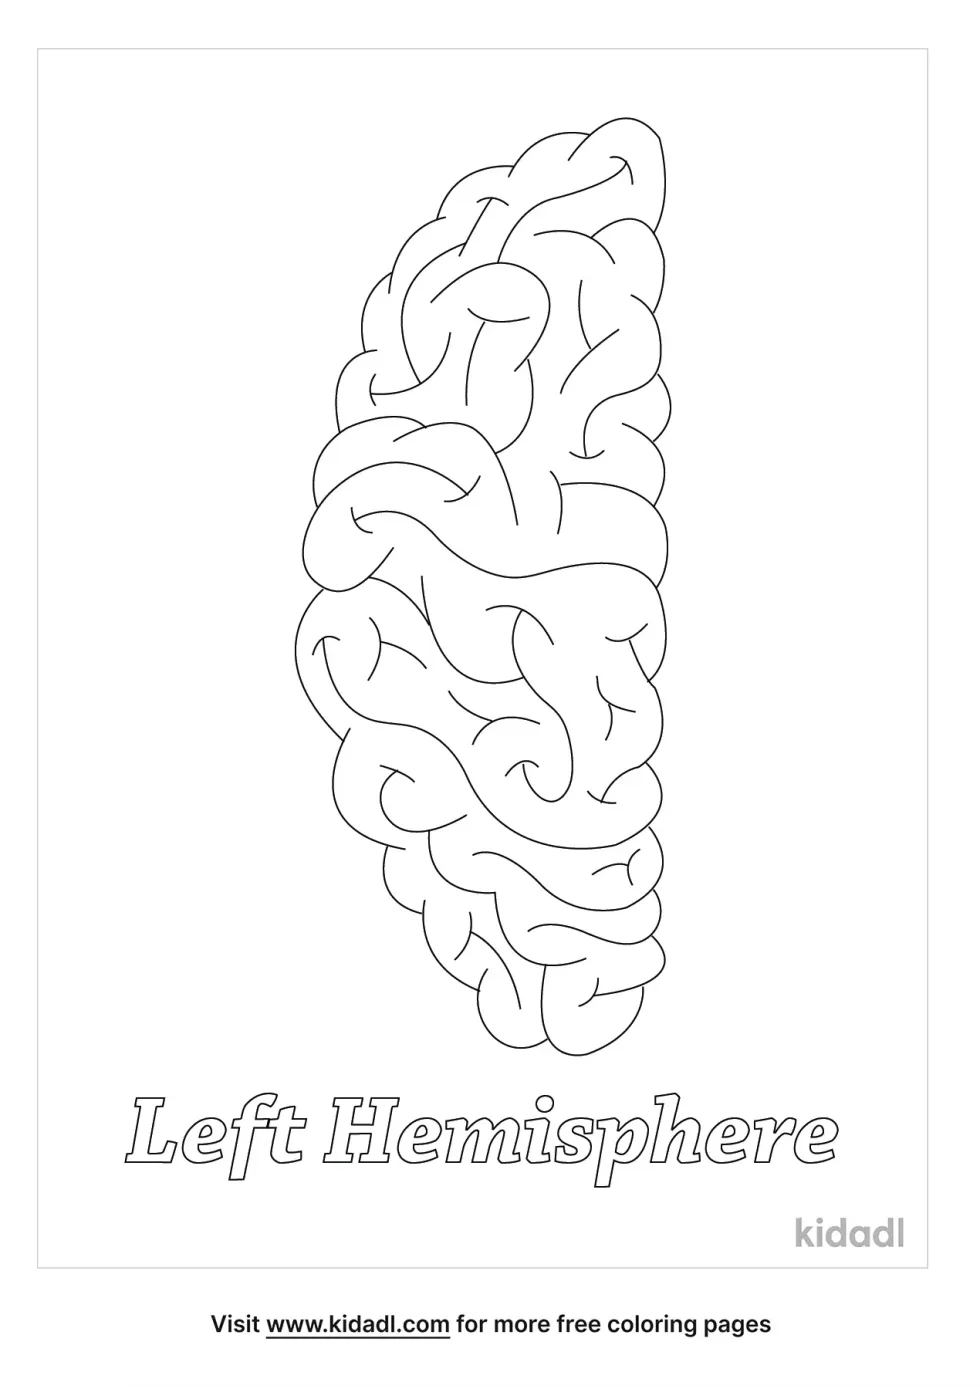 Left Hemisphere